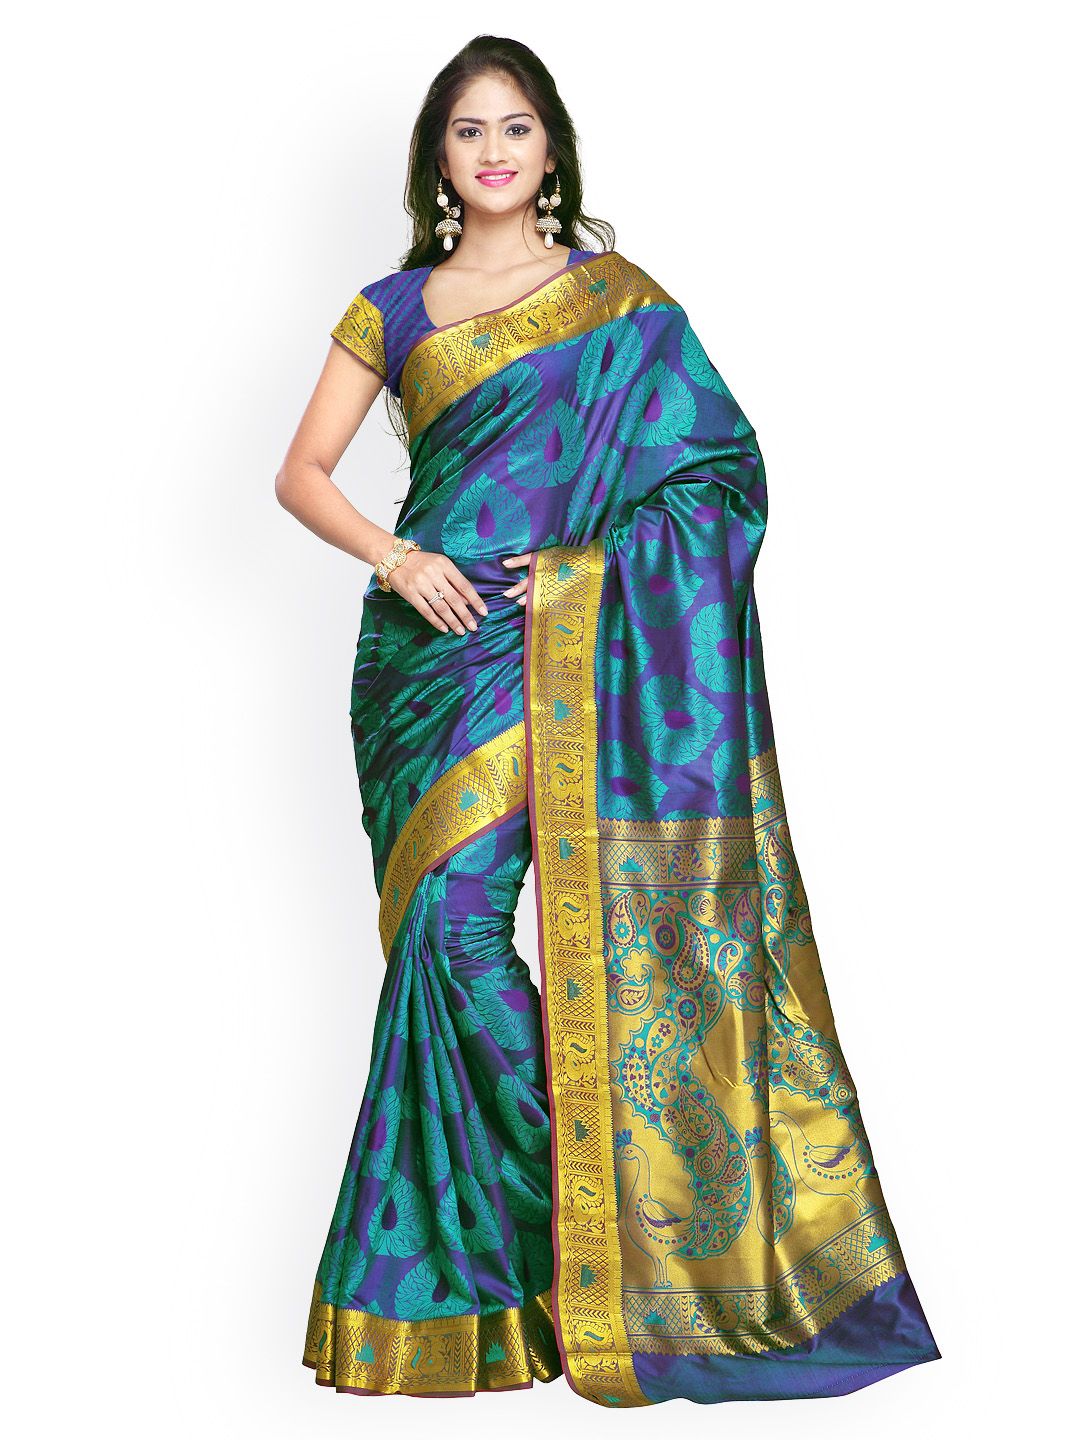 Varkala Silk Sarees Teal Blue Art Silk Paithani Saree Price in India